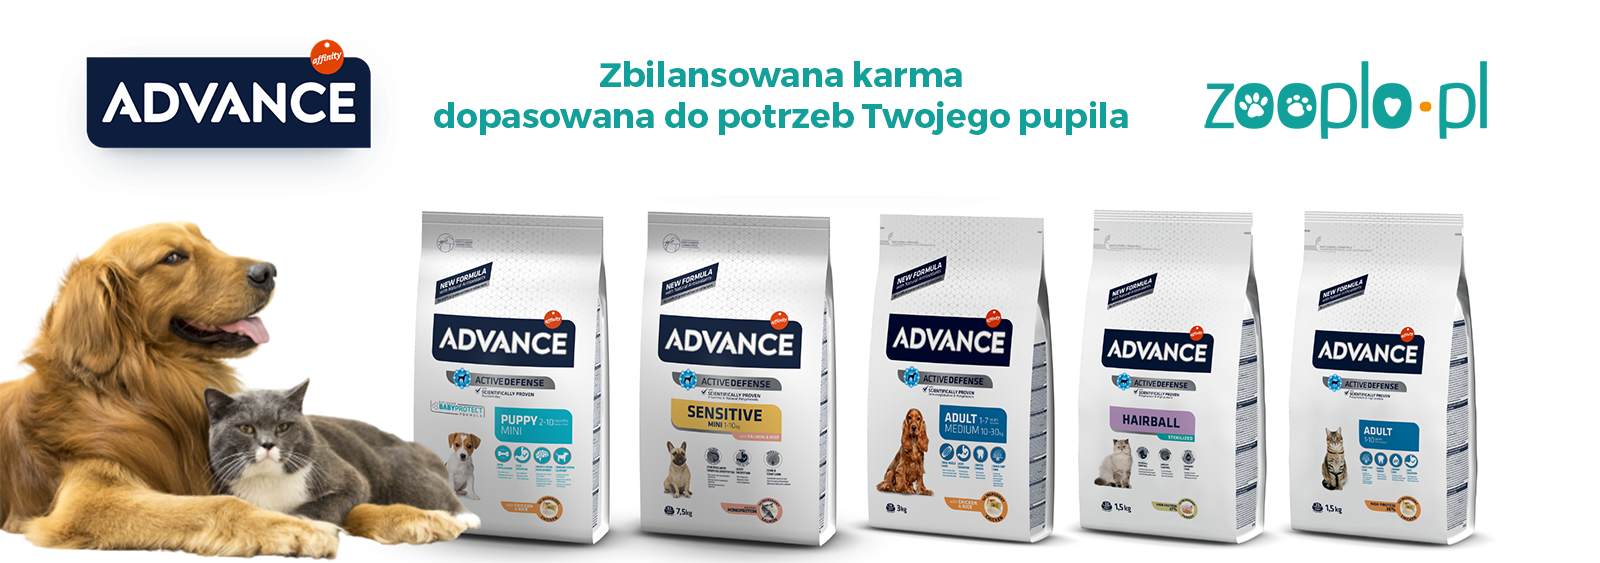 Advance producent karmy dla psów i kotów